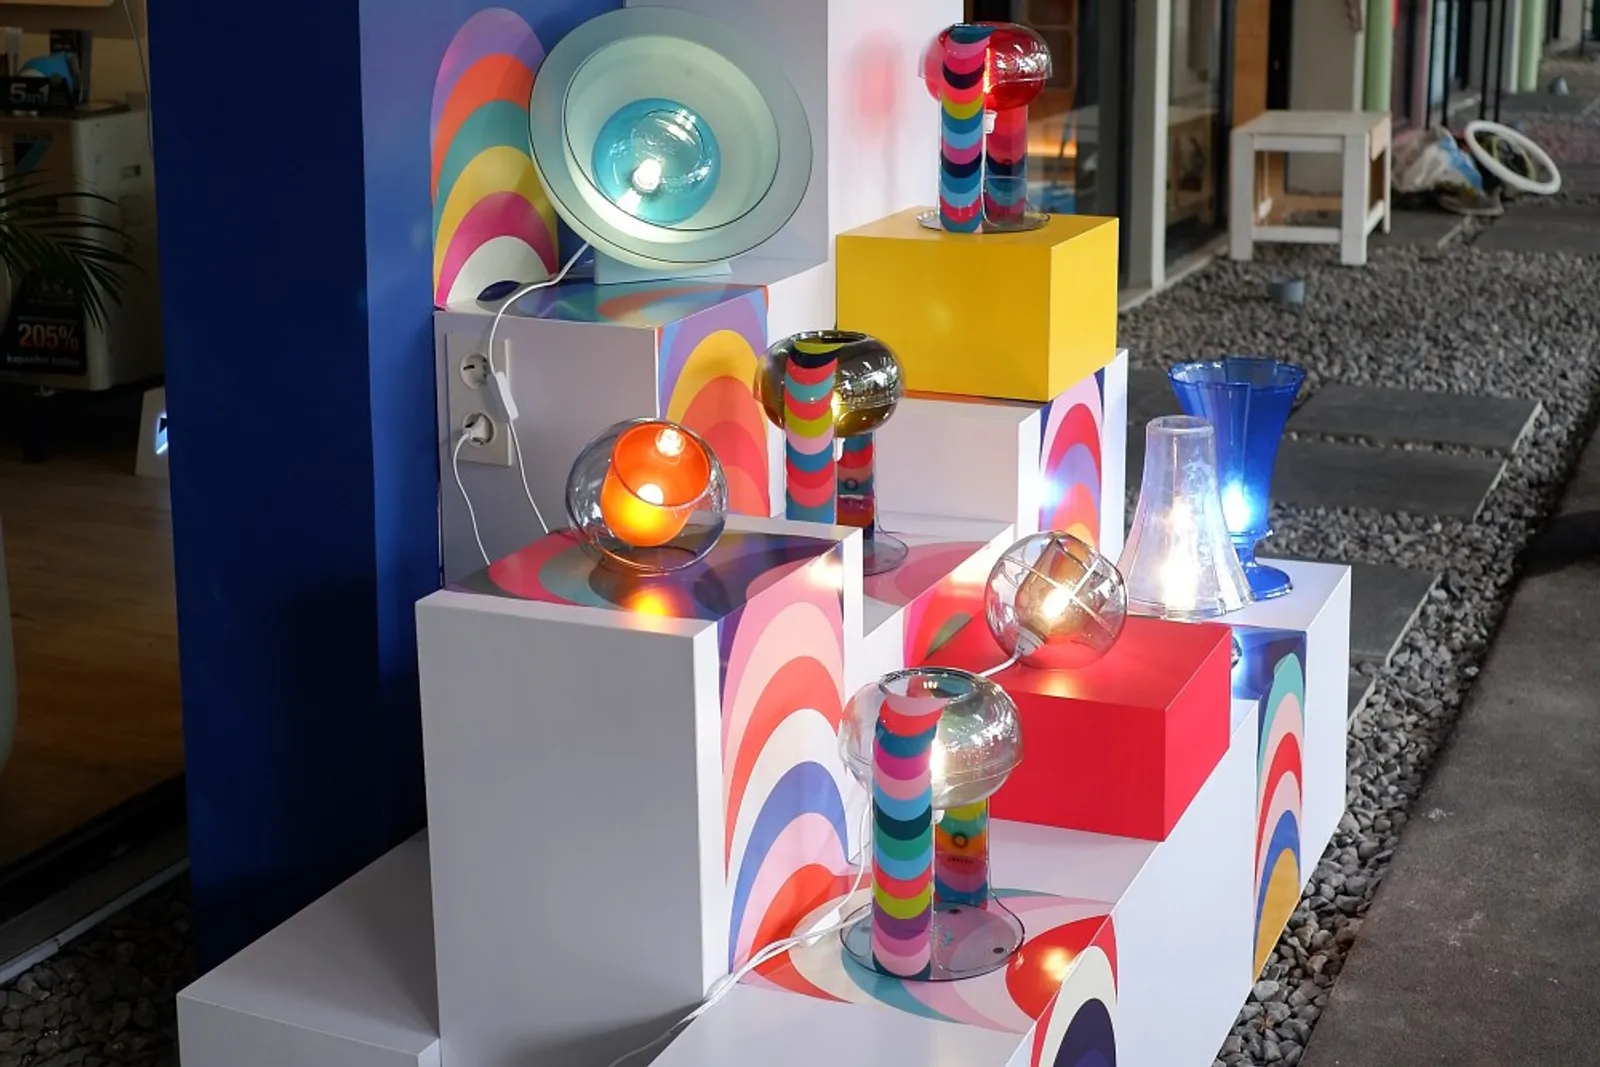 Mengenal Manawa Art Exhibition, Instalasi Lampu Terkini